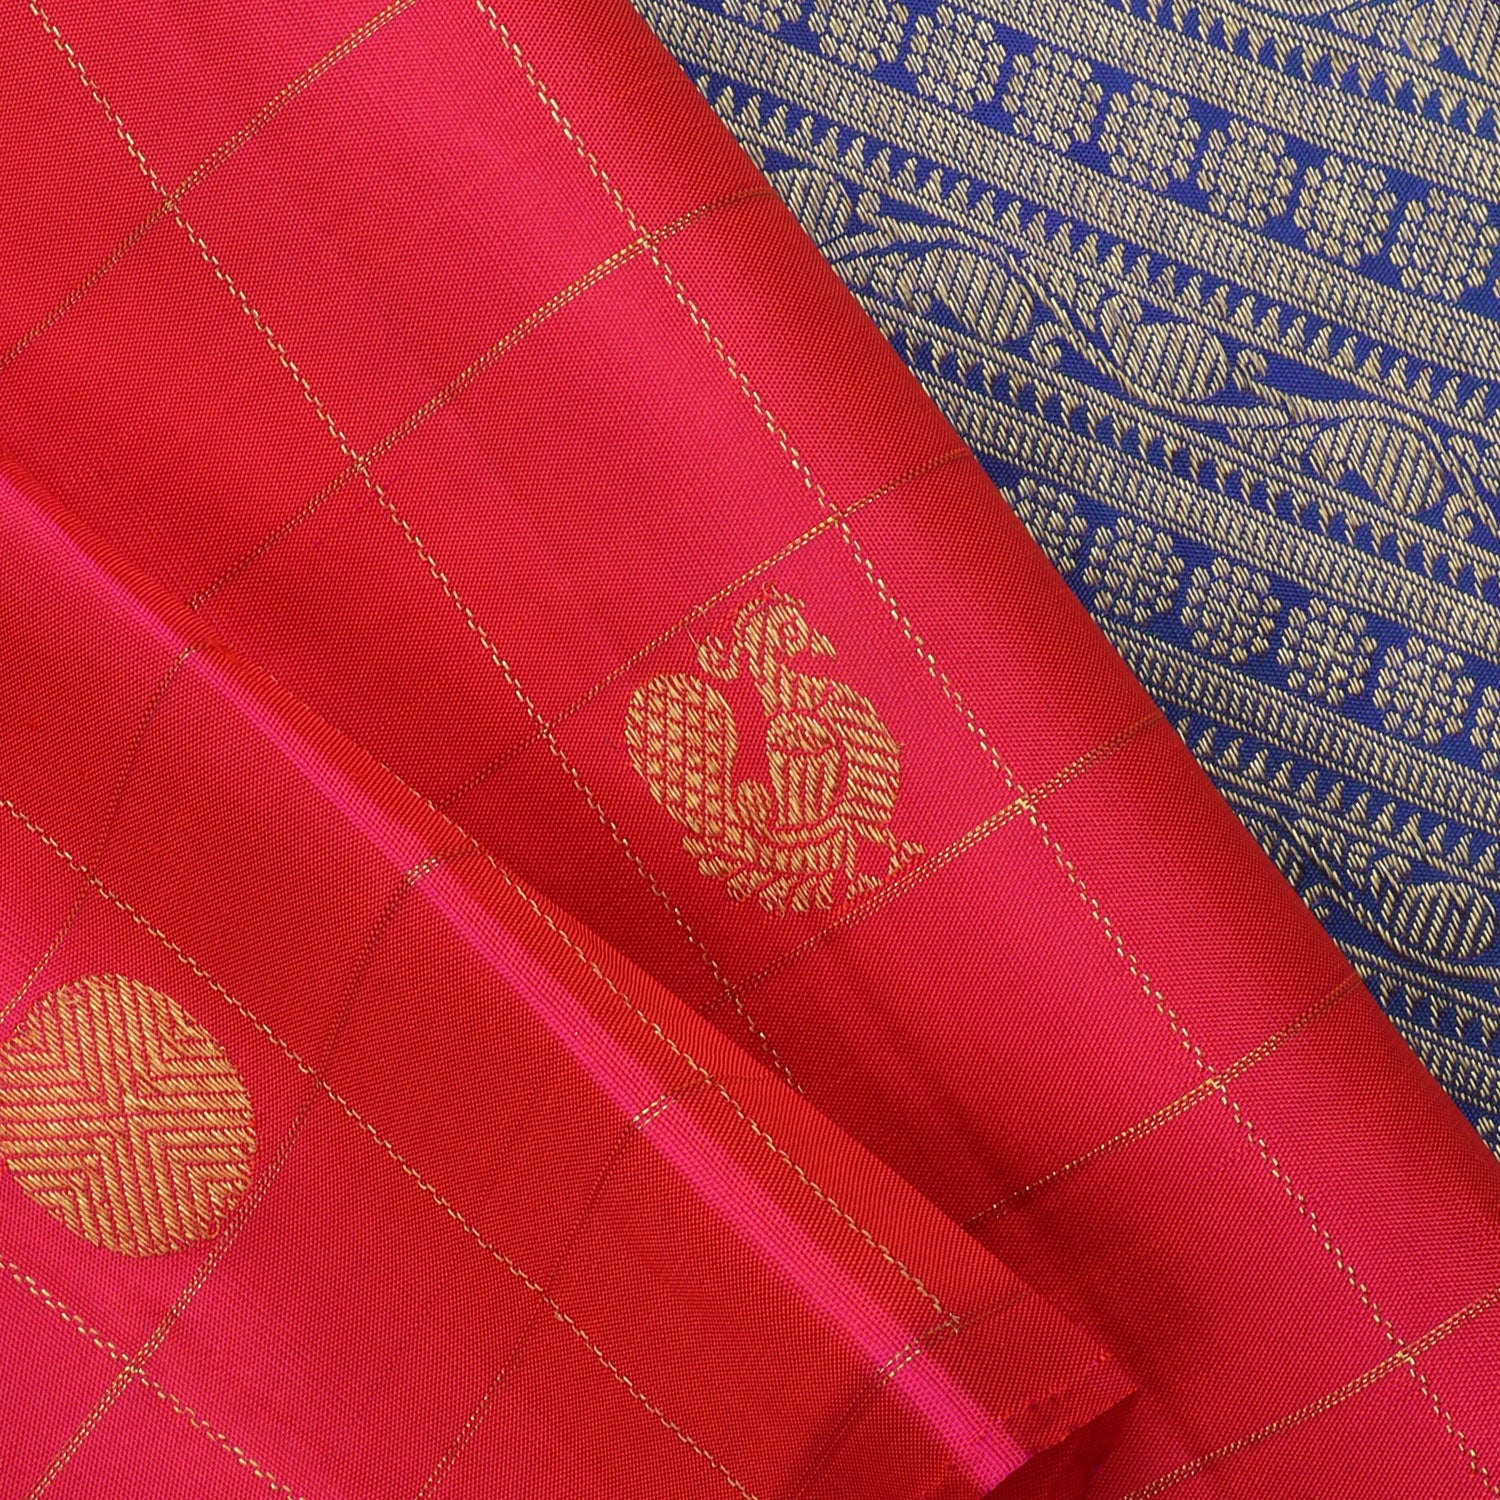 Bright Pink Kanjivaram Silk Saree With Floral And Bird Motifs